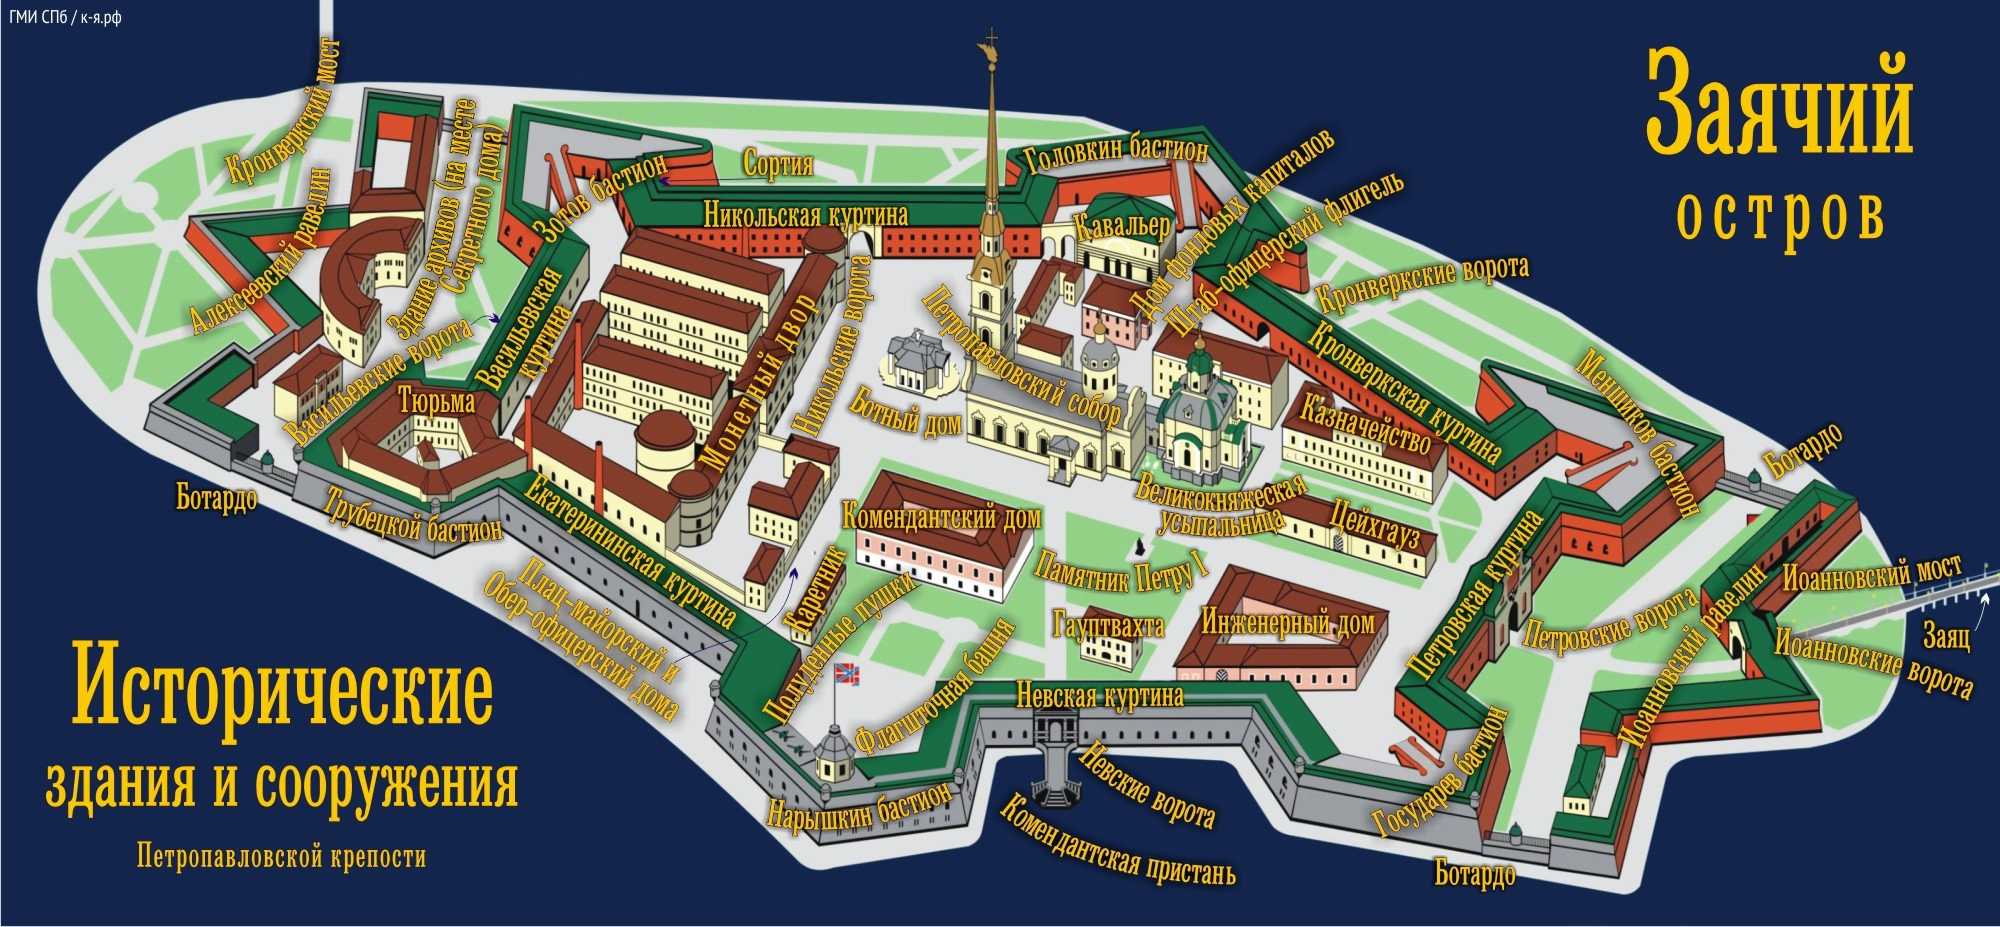 Бастионы и равелины петропавловской крепости в санкт-петербурге, история, описание